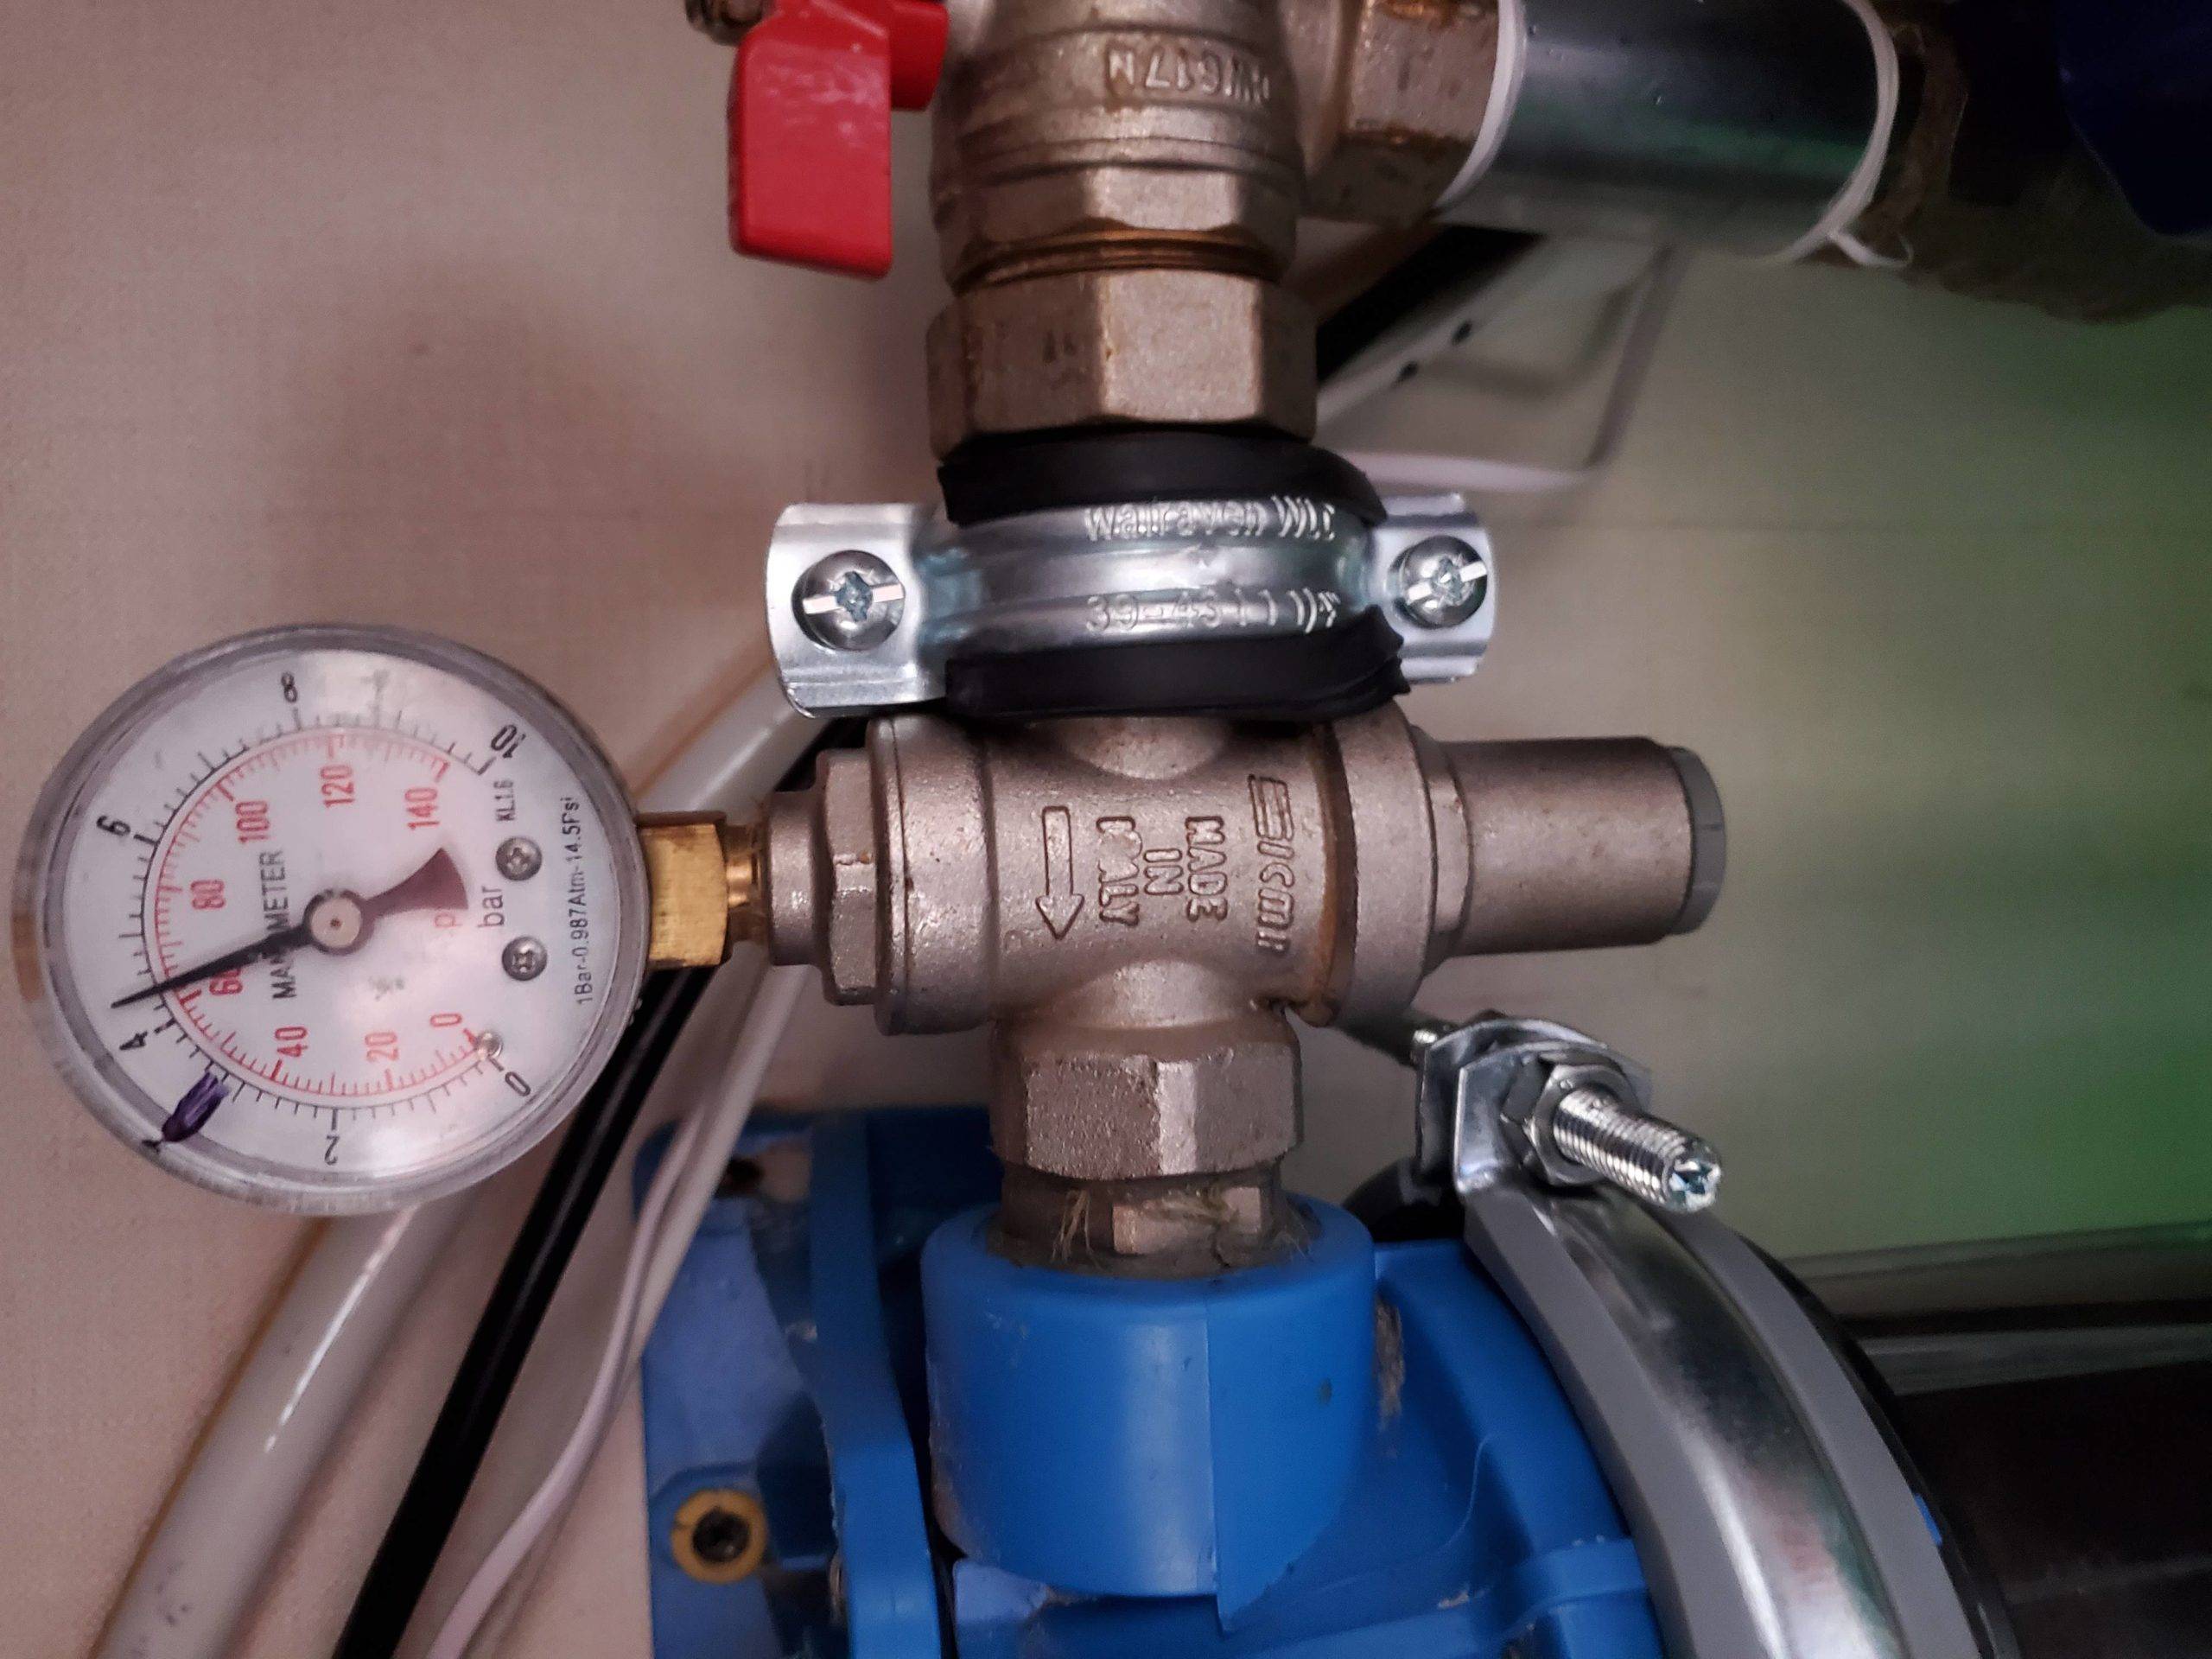 Редуктор или регулятор давления воды –  зачем нужен этот прибор, в чём отличия, устройство и принцип работы. – строймастерская